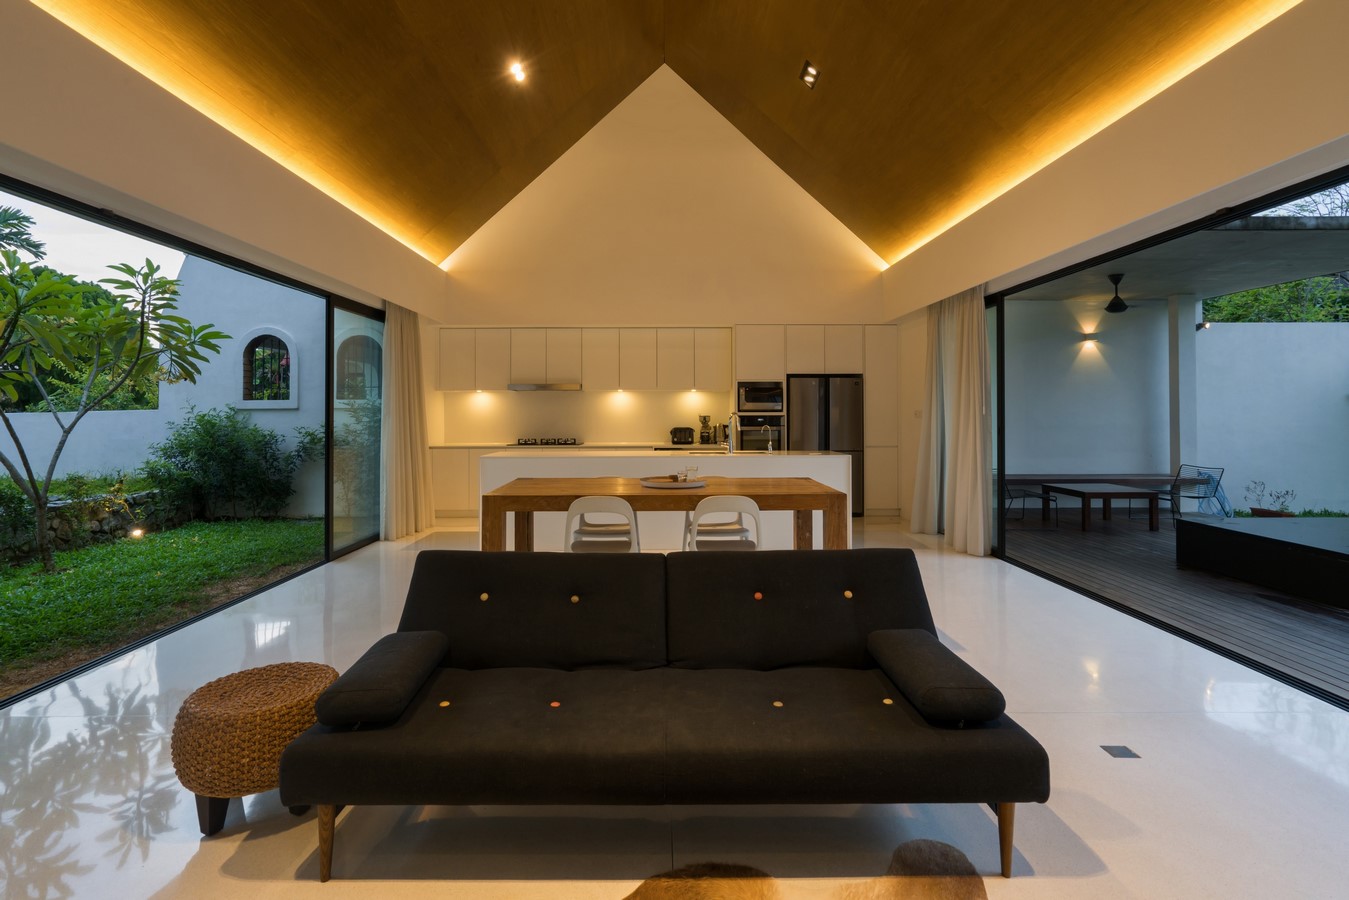 Knikno House By Fabian Tan Architect - SHeet - Sheet2